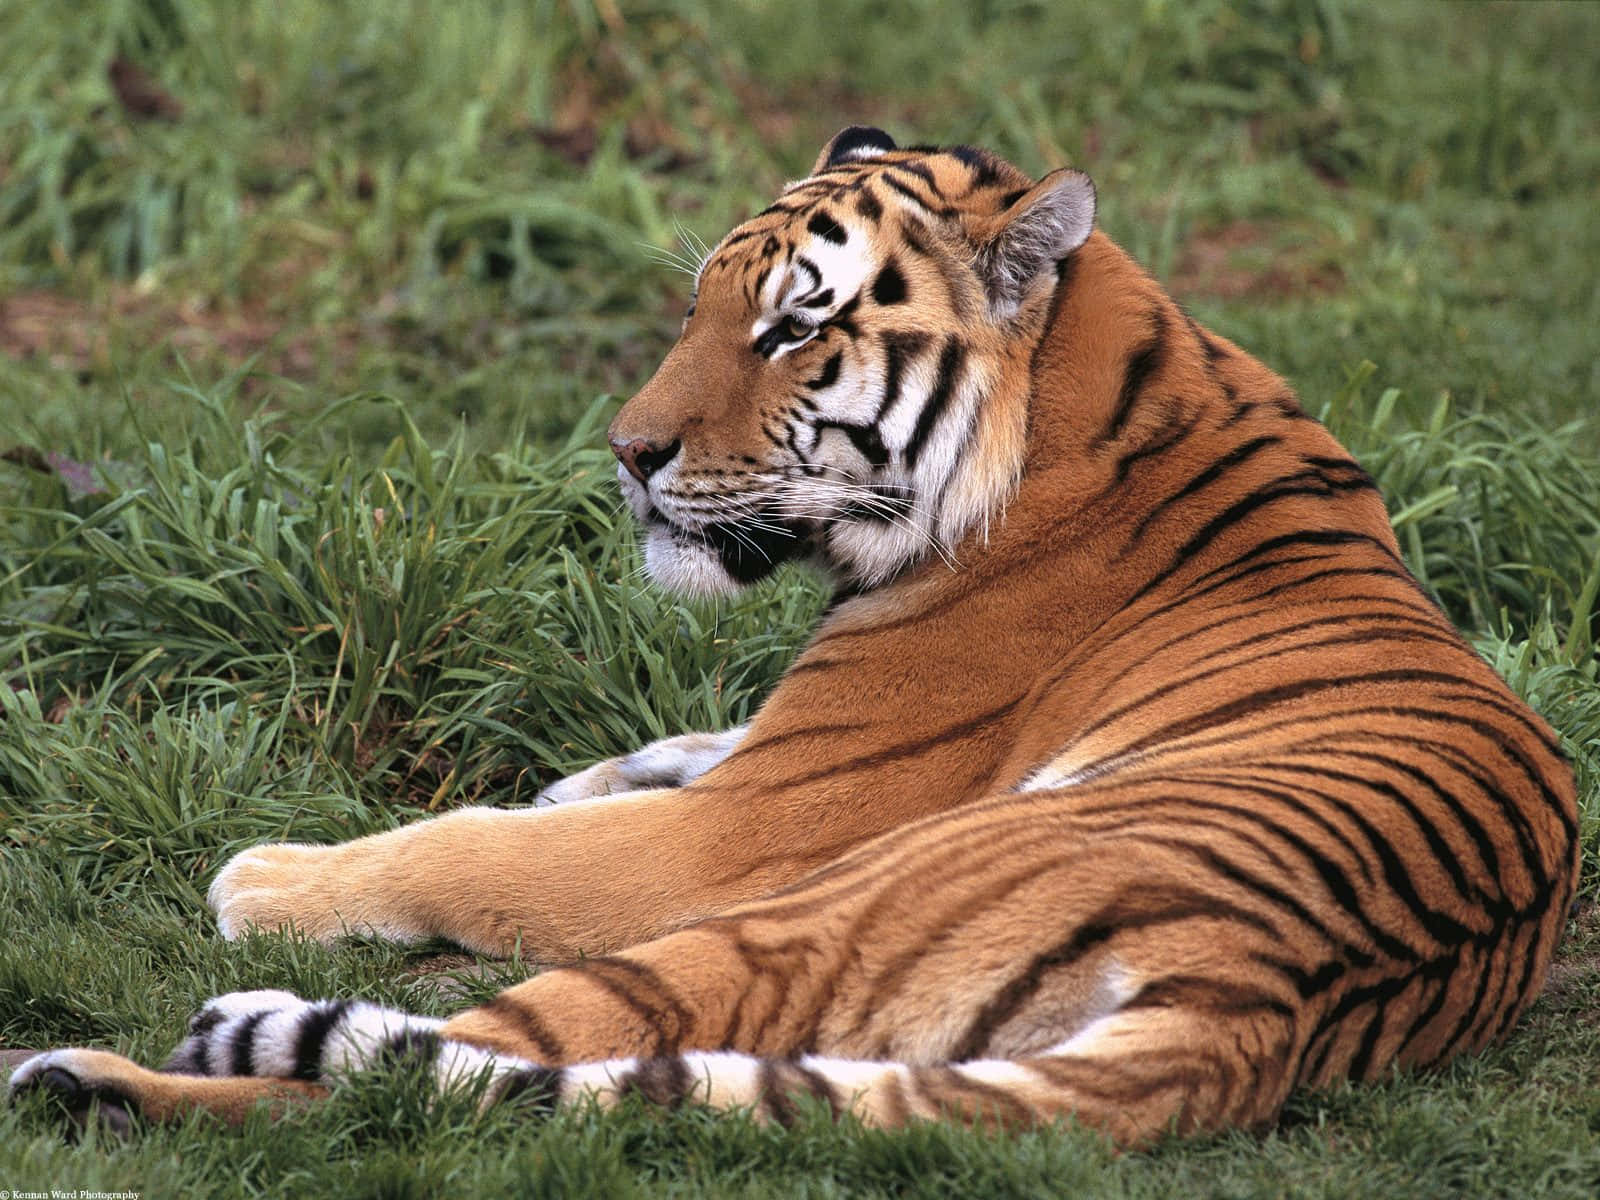 “A spectacular sighting of a beautiful Bengal tiger.”